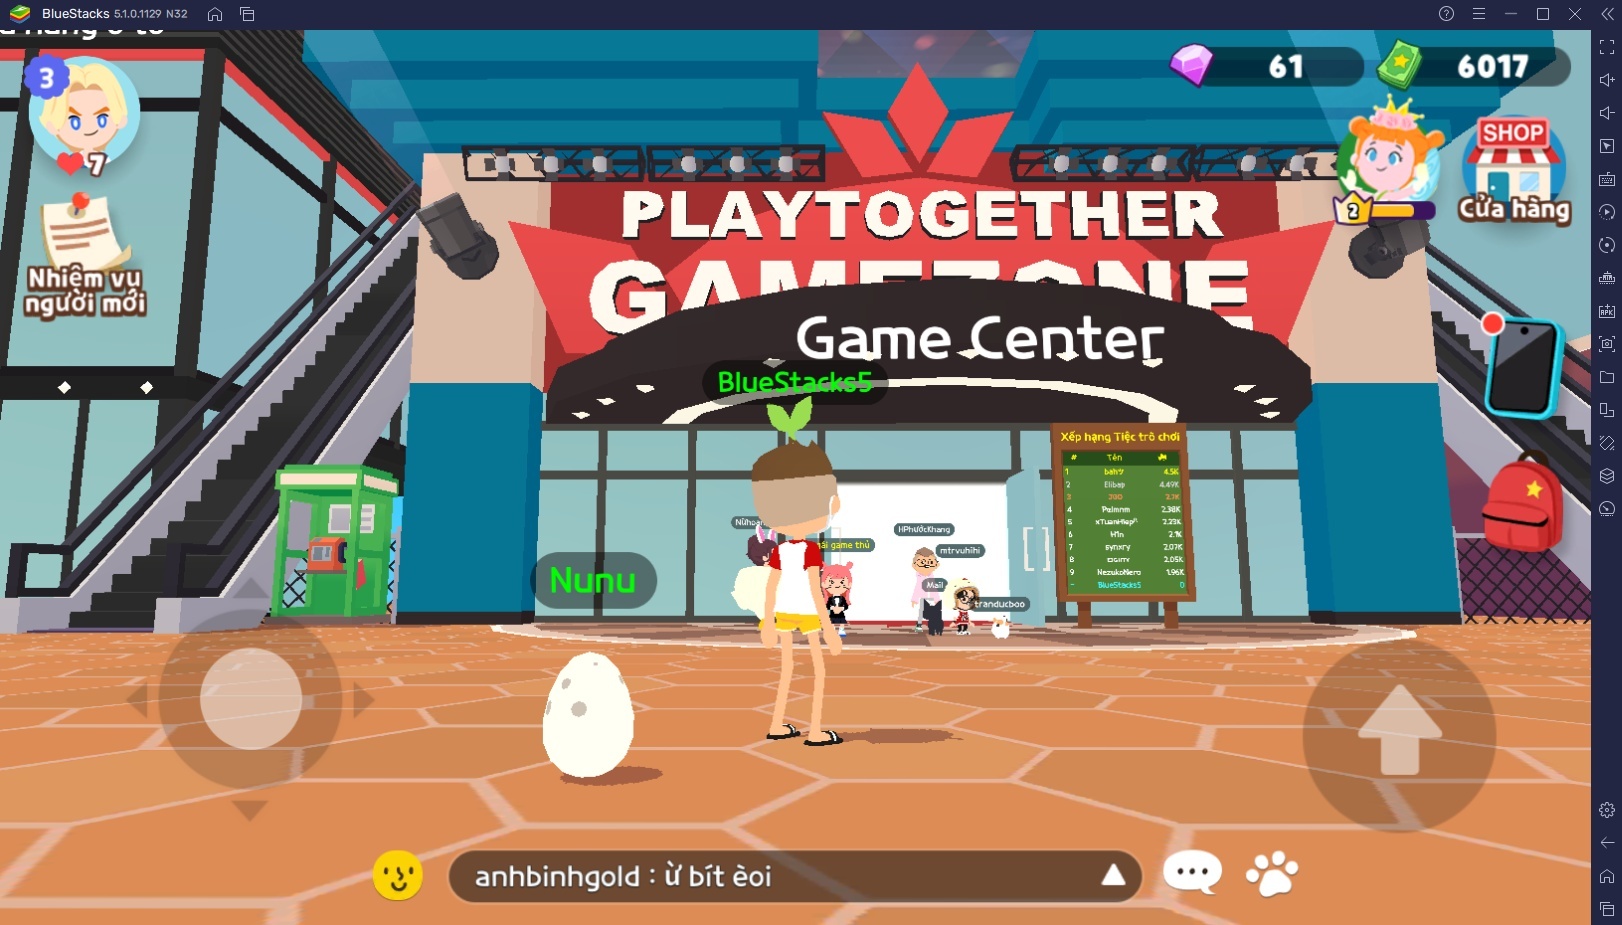 Chơi Play Together trên PC: Khám phá khu vực Plaza